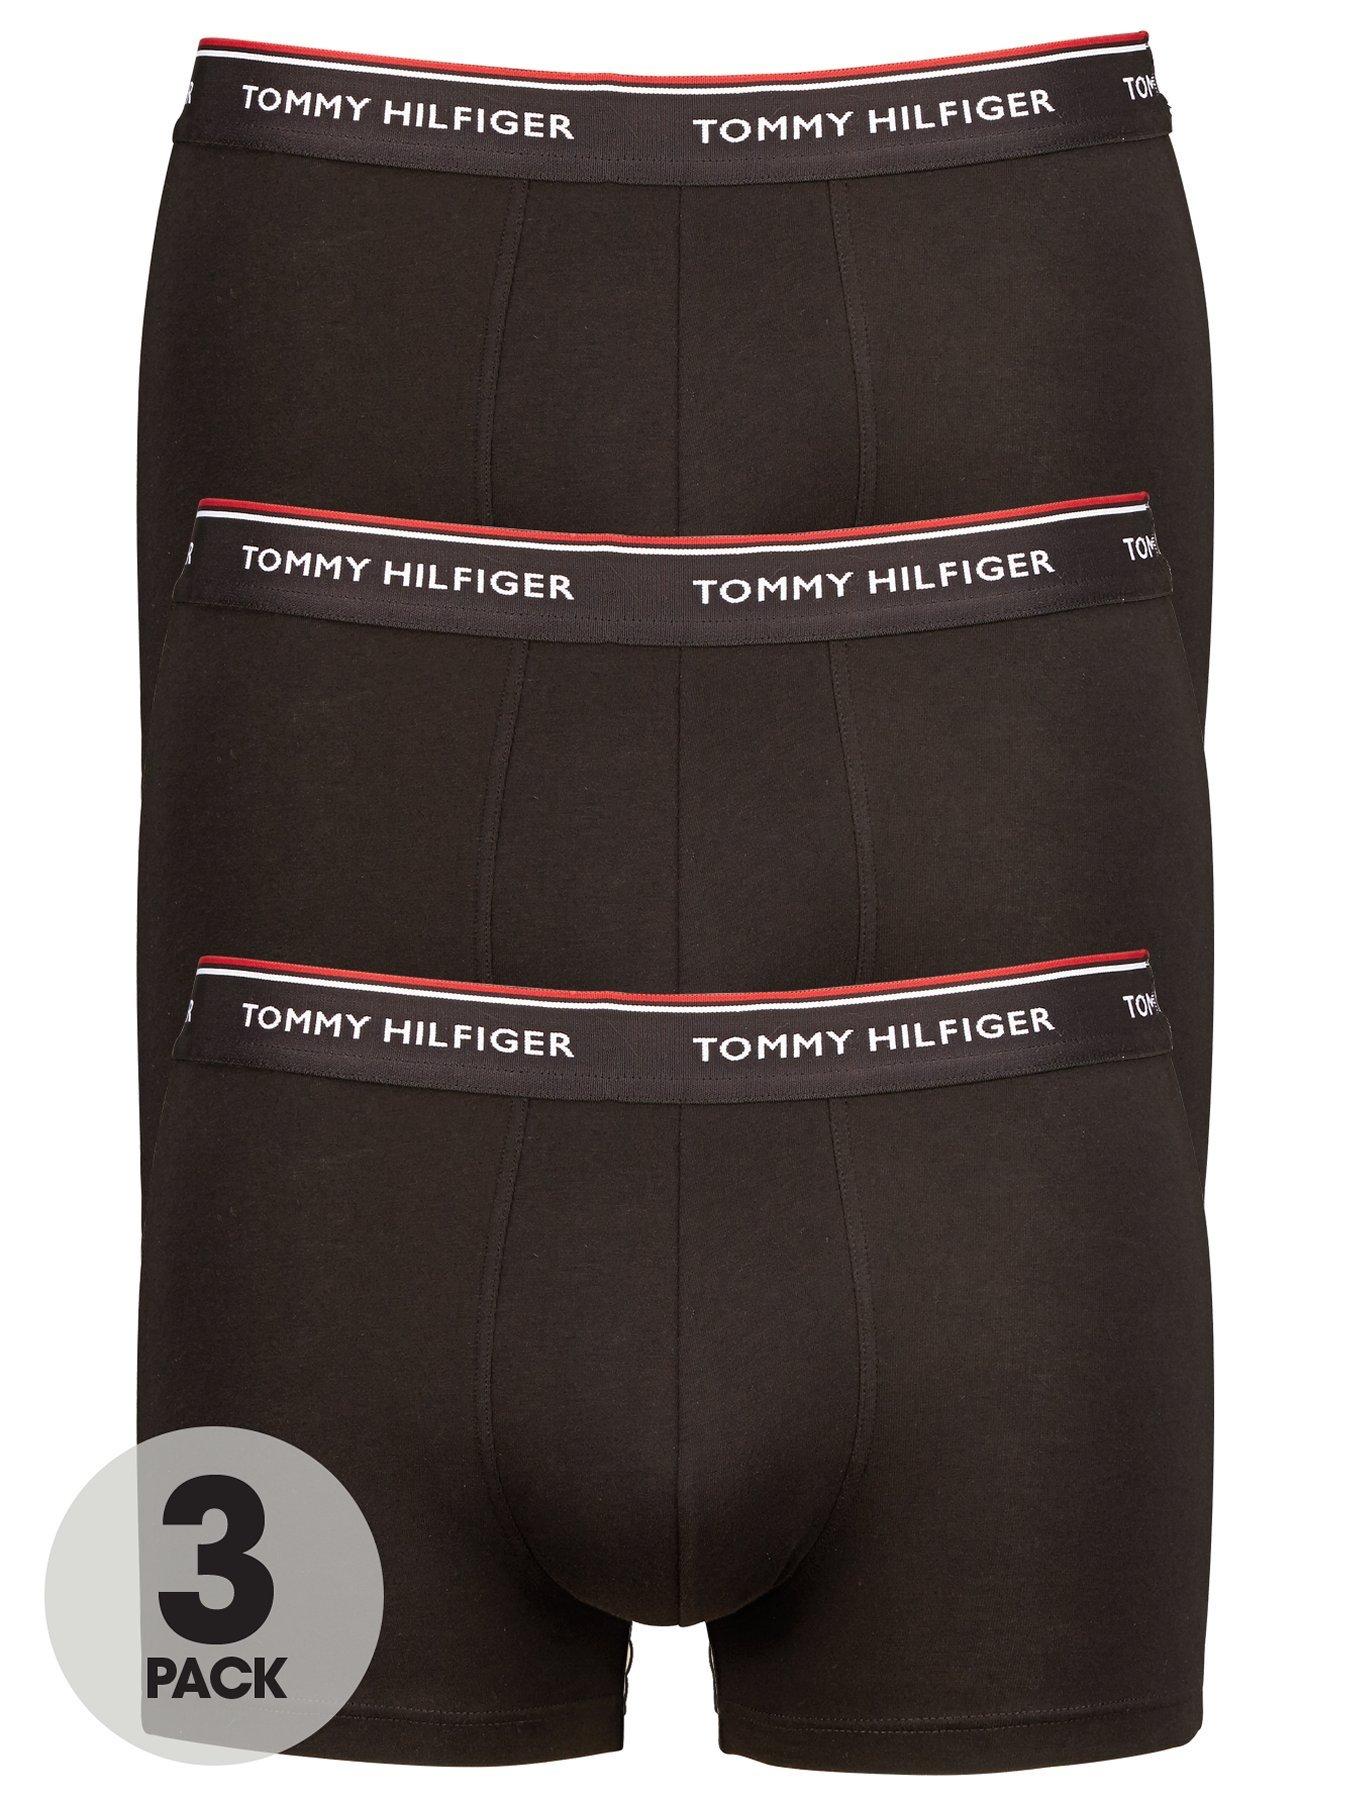 Tommy Hilfiger 3 Pack Premium Essentials Trunks - Red/White/Navy